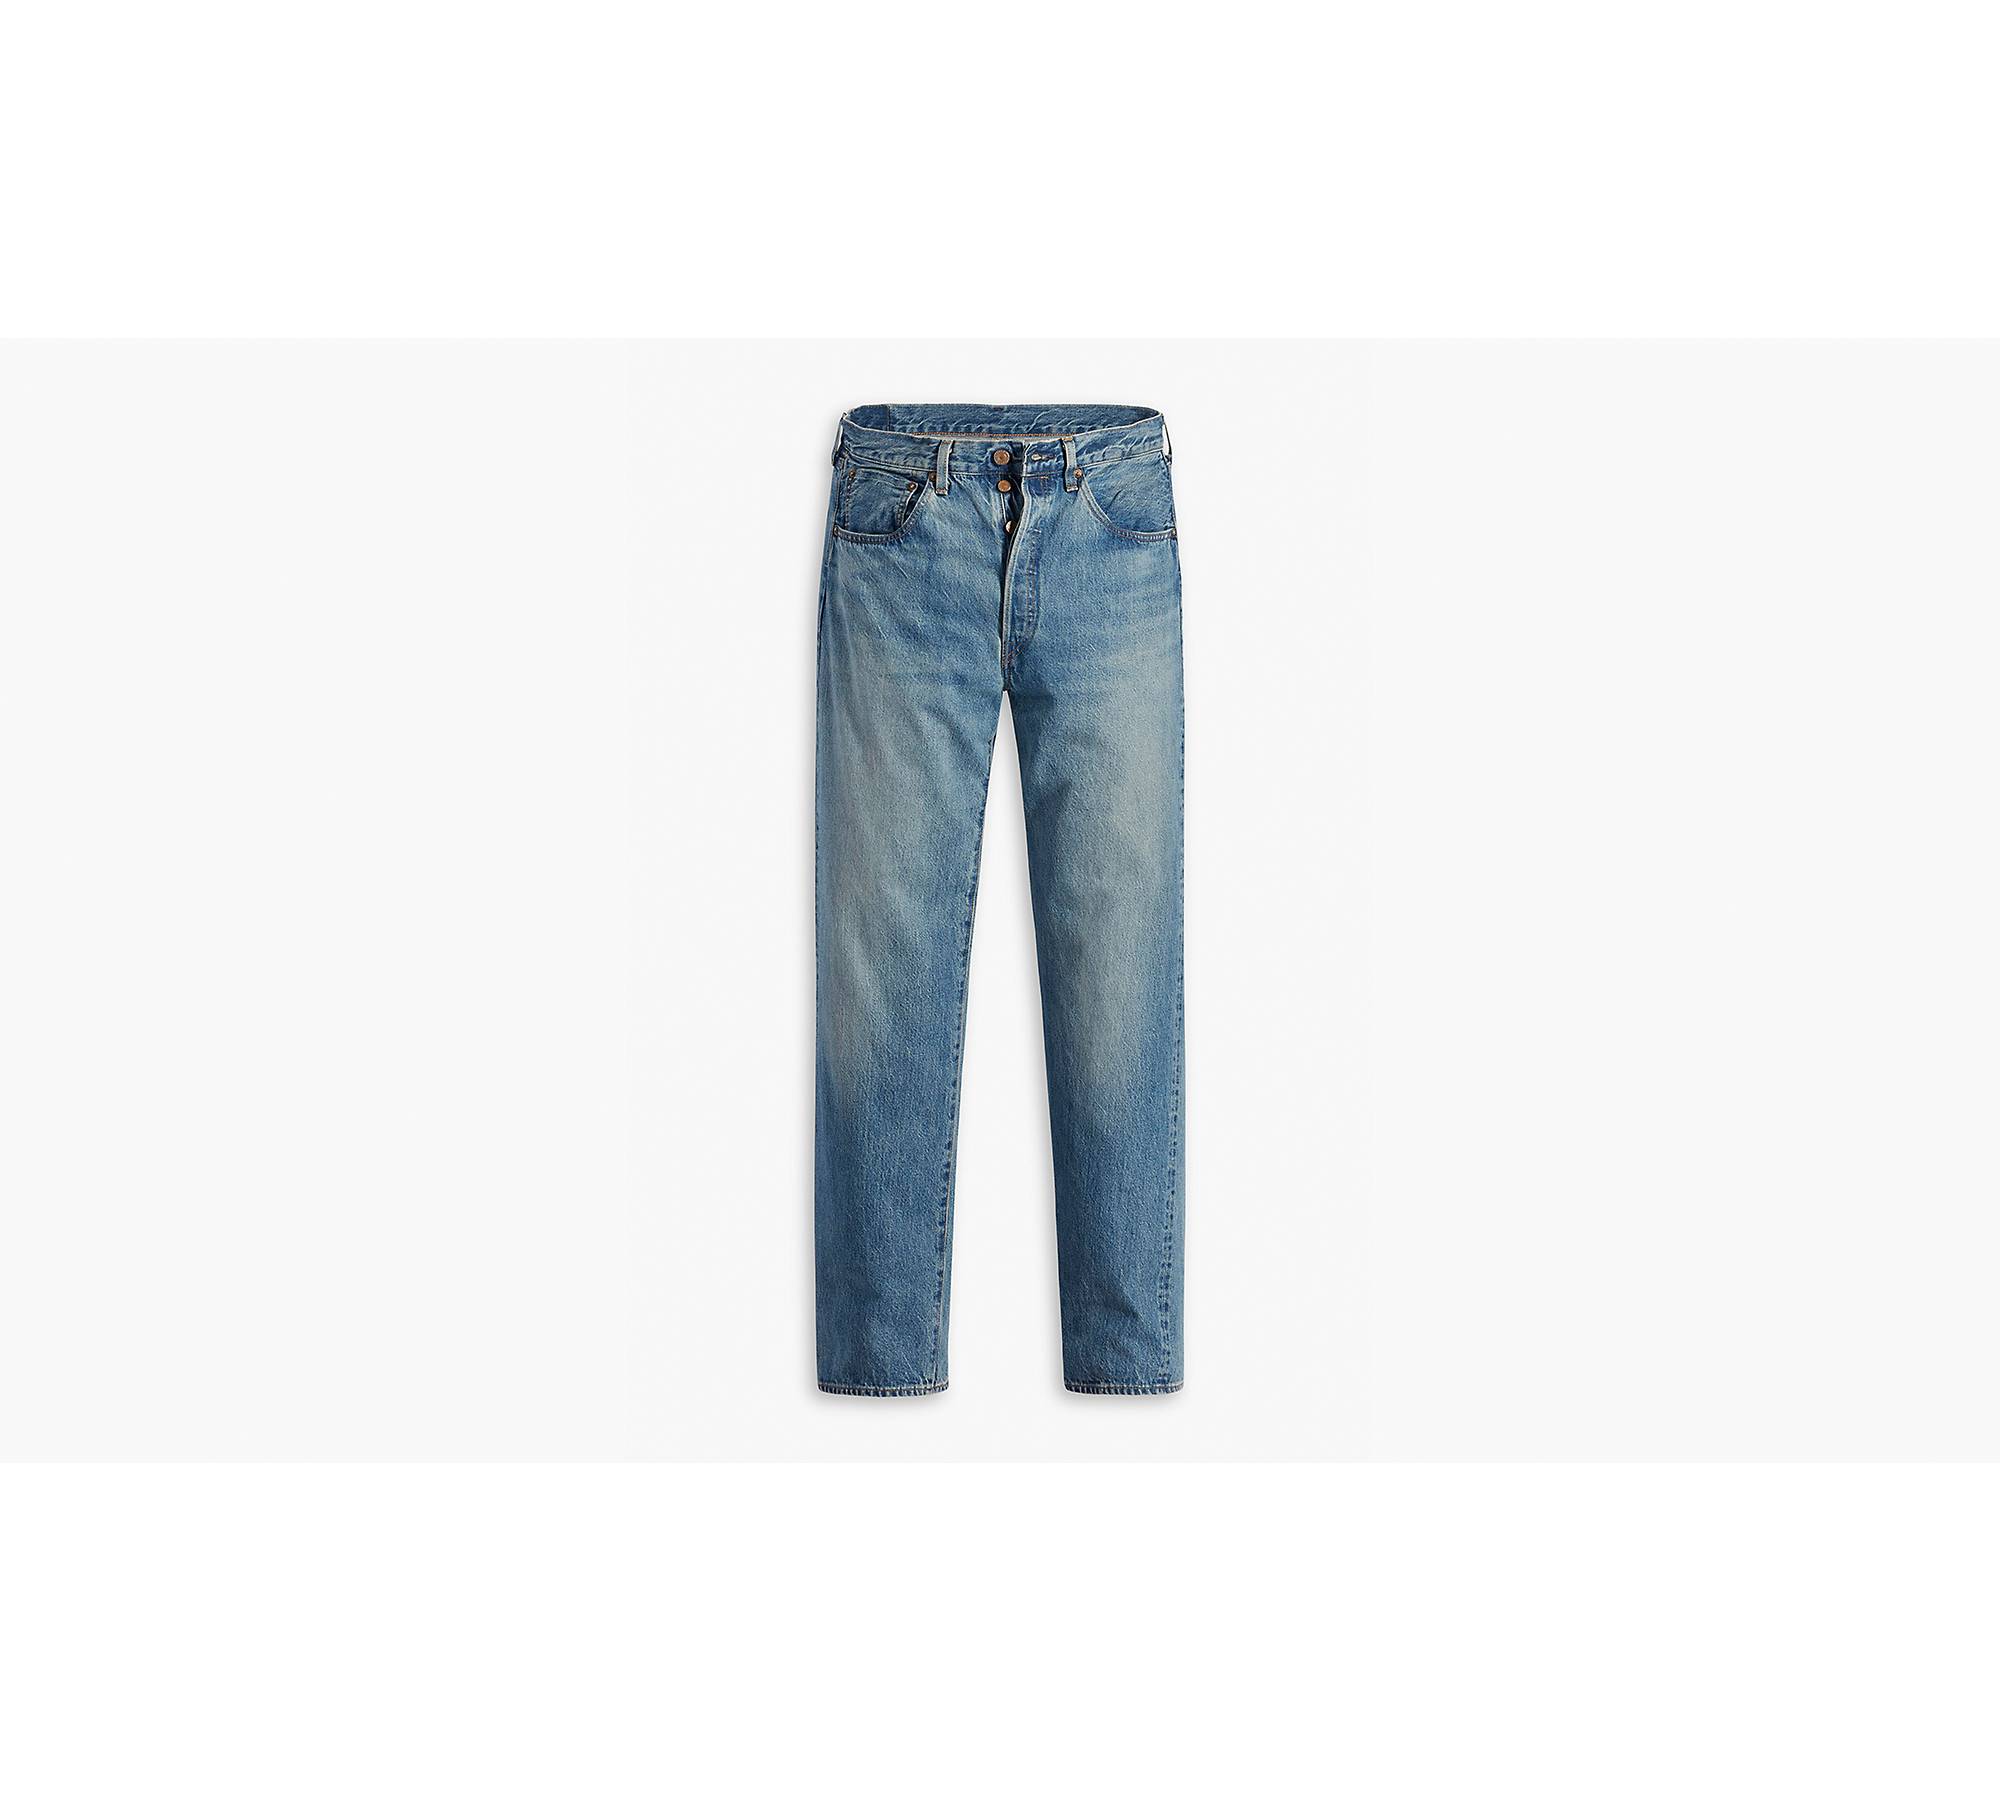 1955 501® Original Fit Selvedge Men's Jeans - Medium Wash | Levi's® US